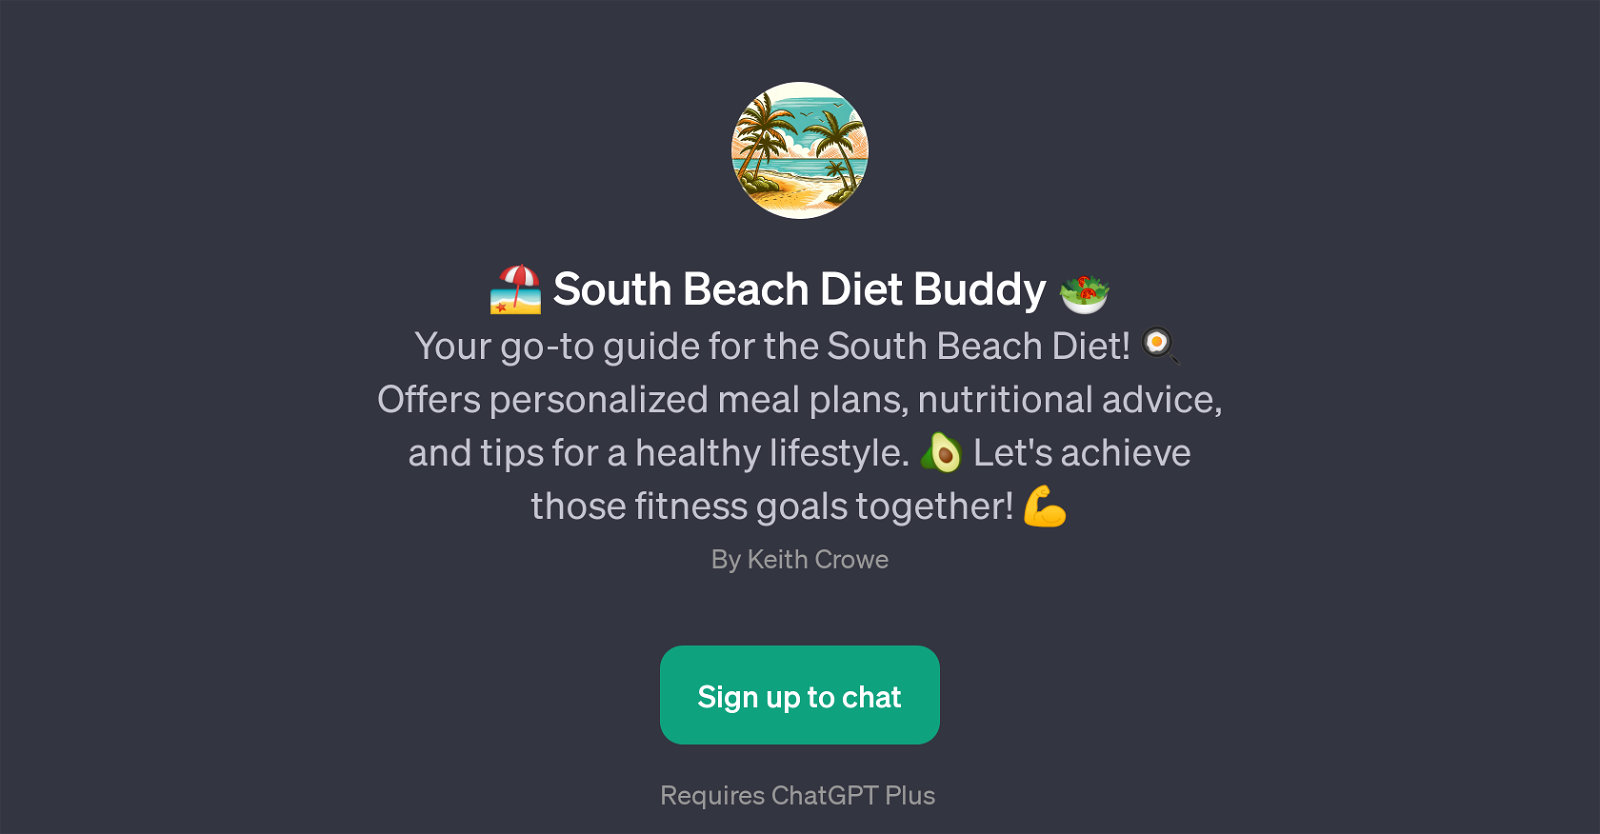 South Beach Diet Buddy website